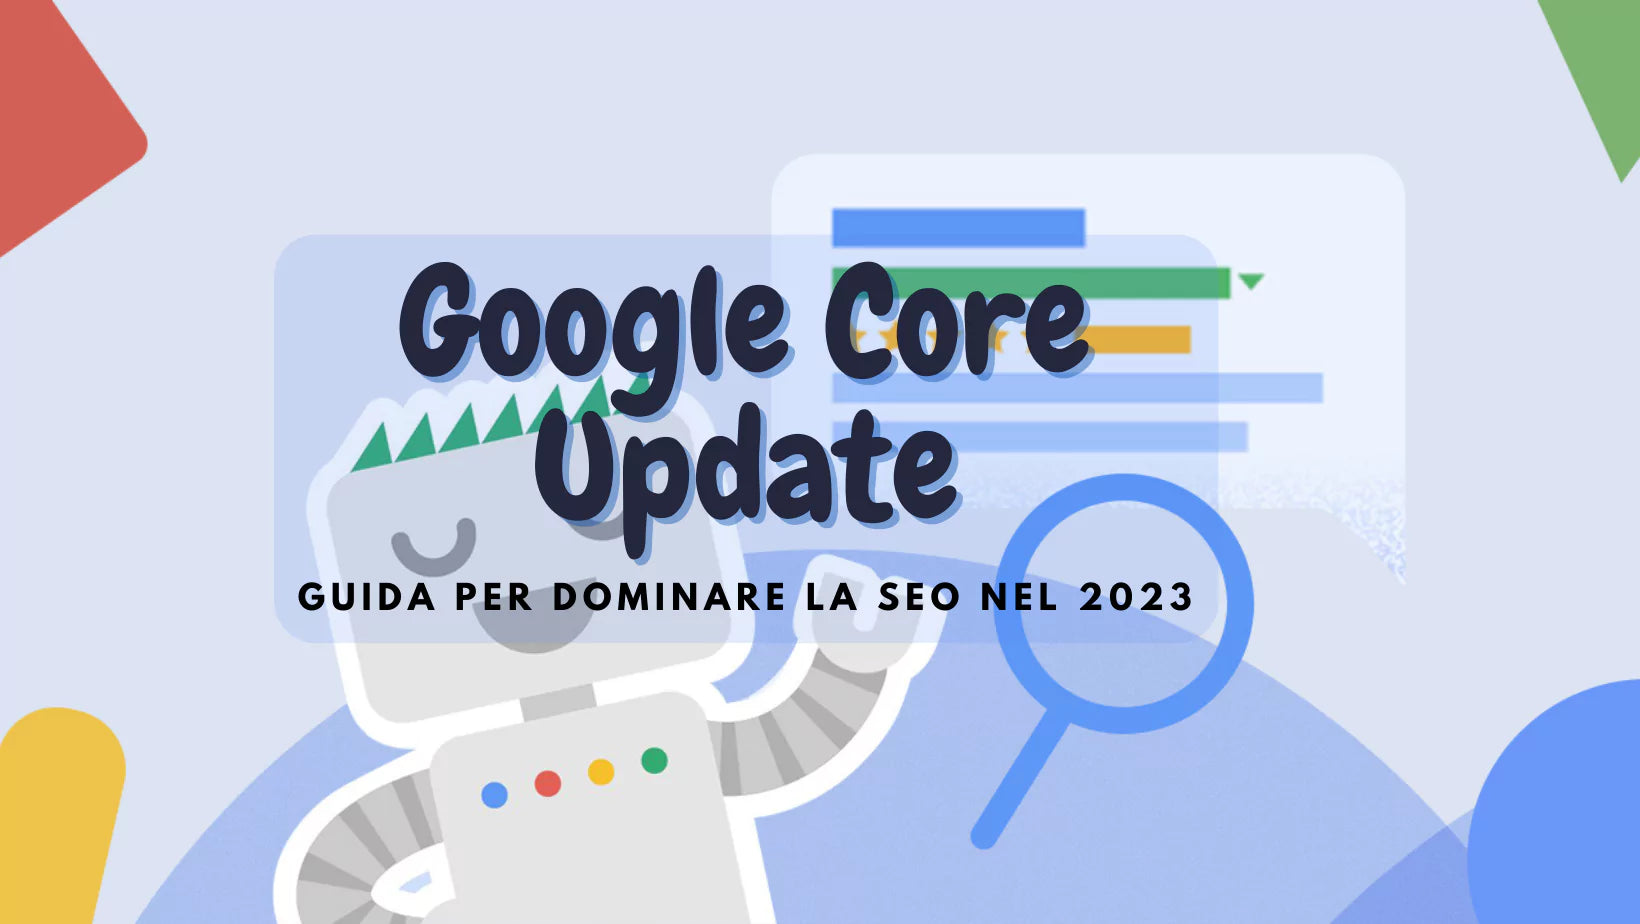 Google Core Update: Guida per Dominare la SEO nel 2023